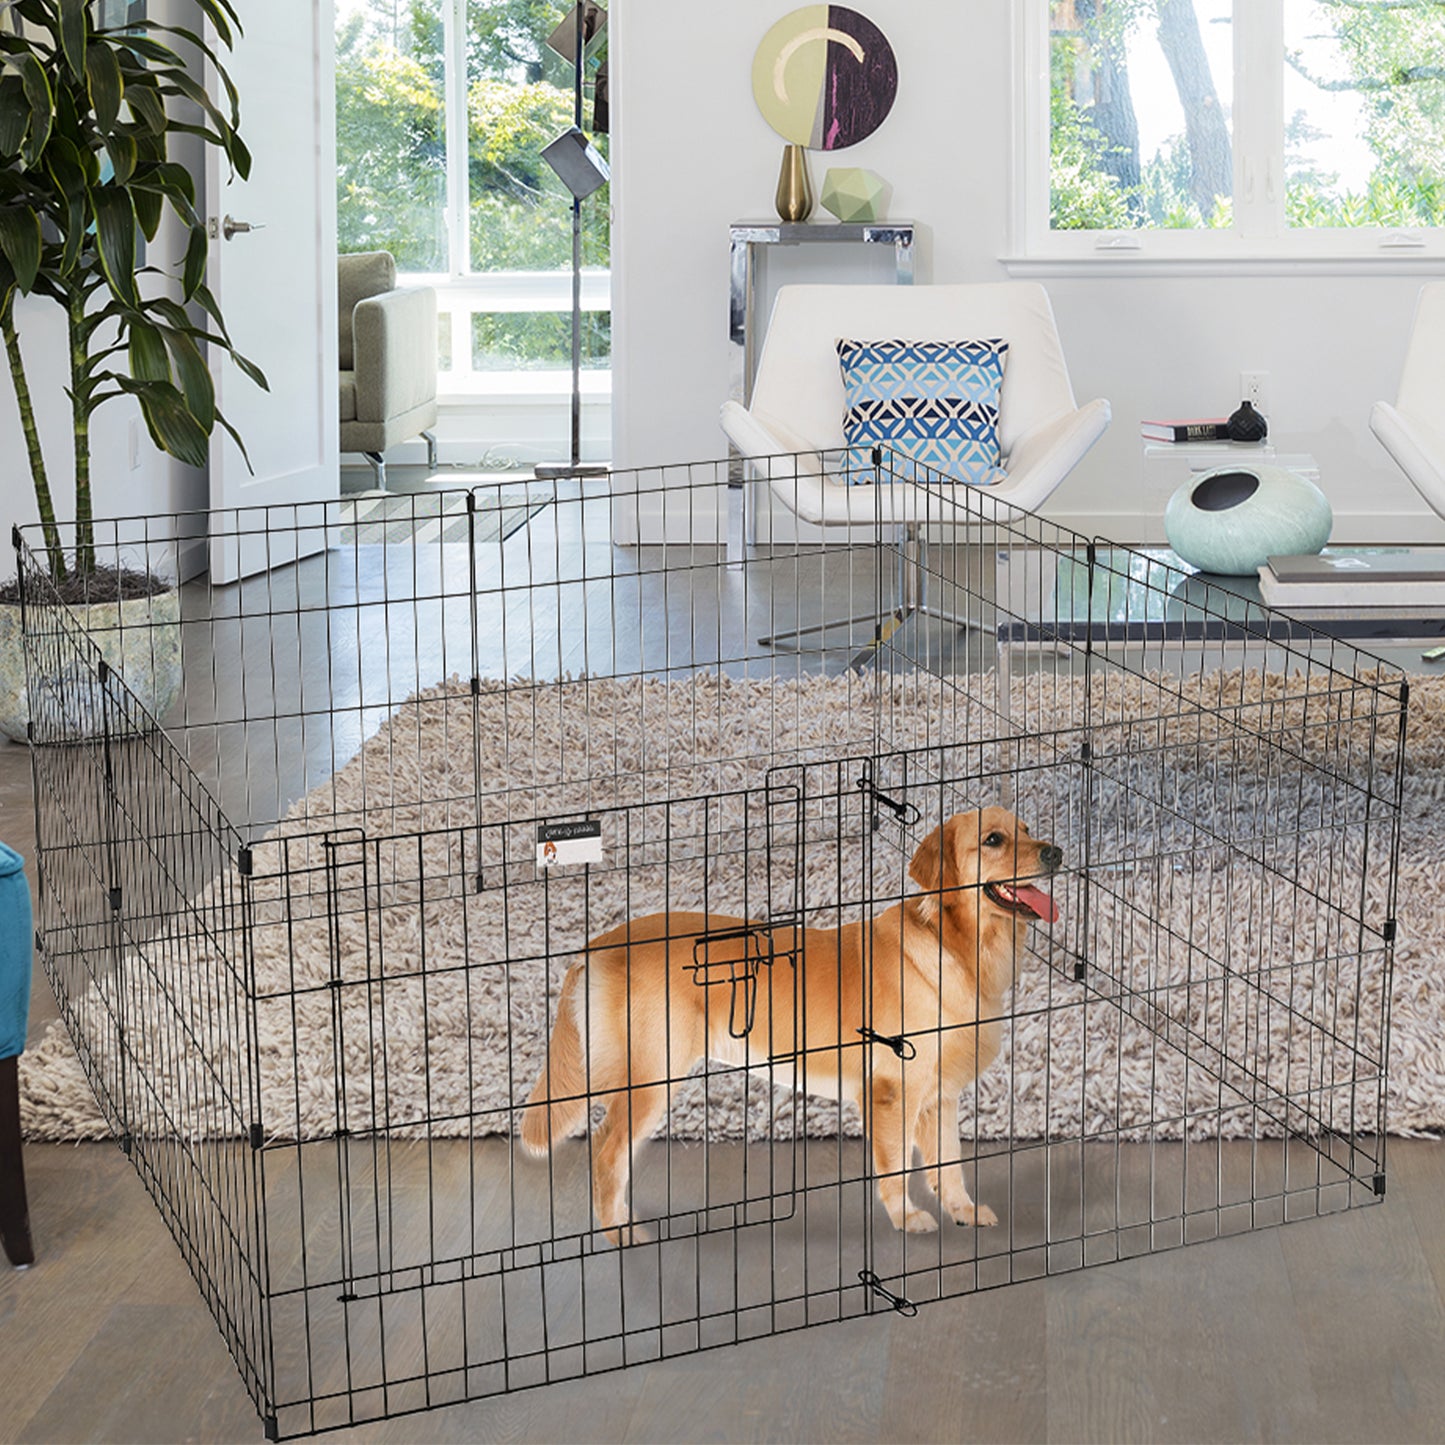 PETMAKER Indoor/Outdoor Foldable Dog Playpen